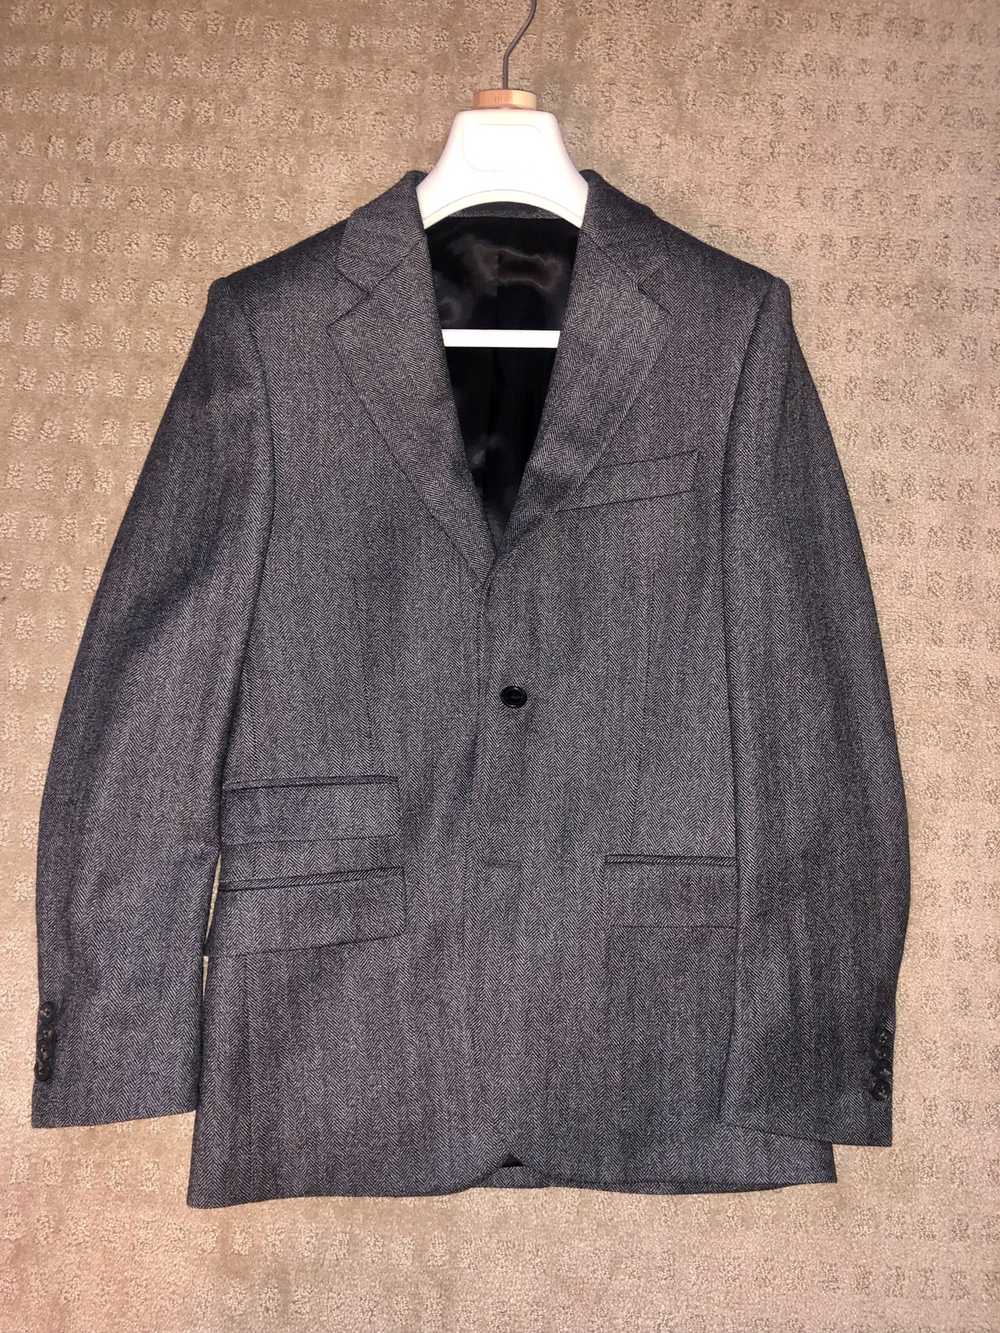 Stella McCartney Suit Jacket - image 1